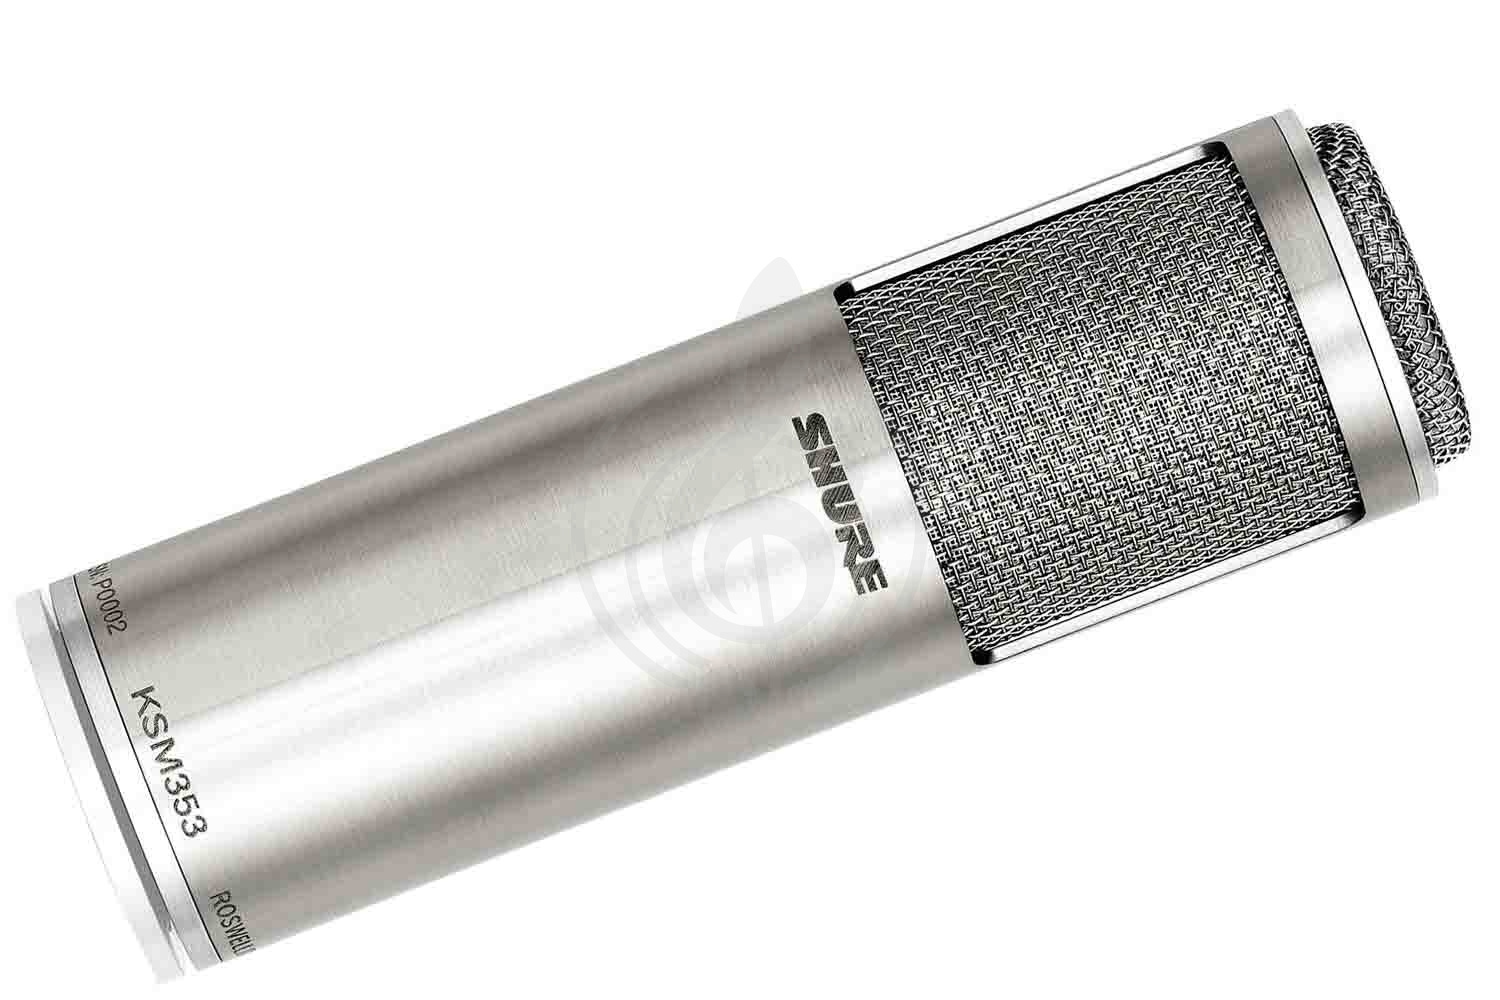 Конденсаторный студийный микрофон Конденсаторные студийные микрофоны Shure SHURE KSM353 - конденсаторный студийный микрофон KSM353 - фото 1